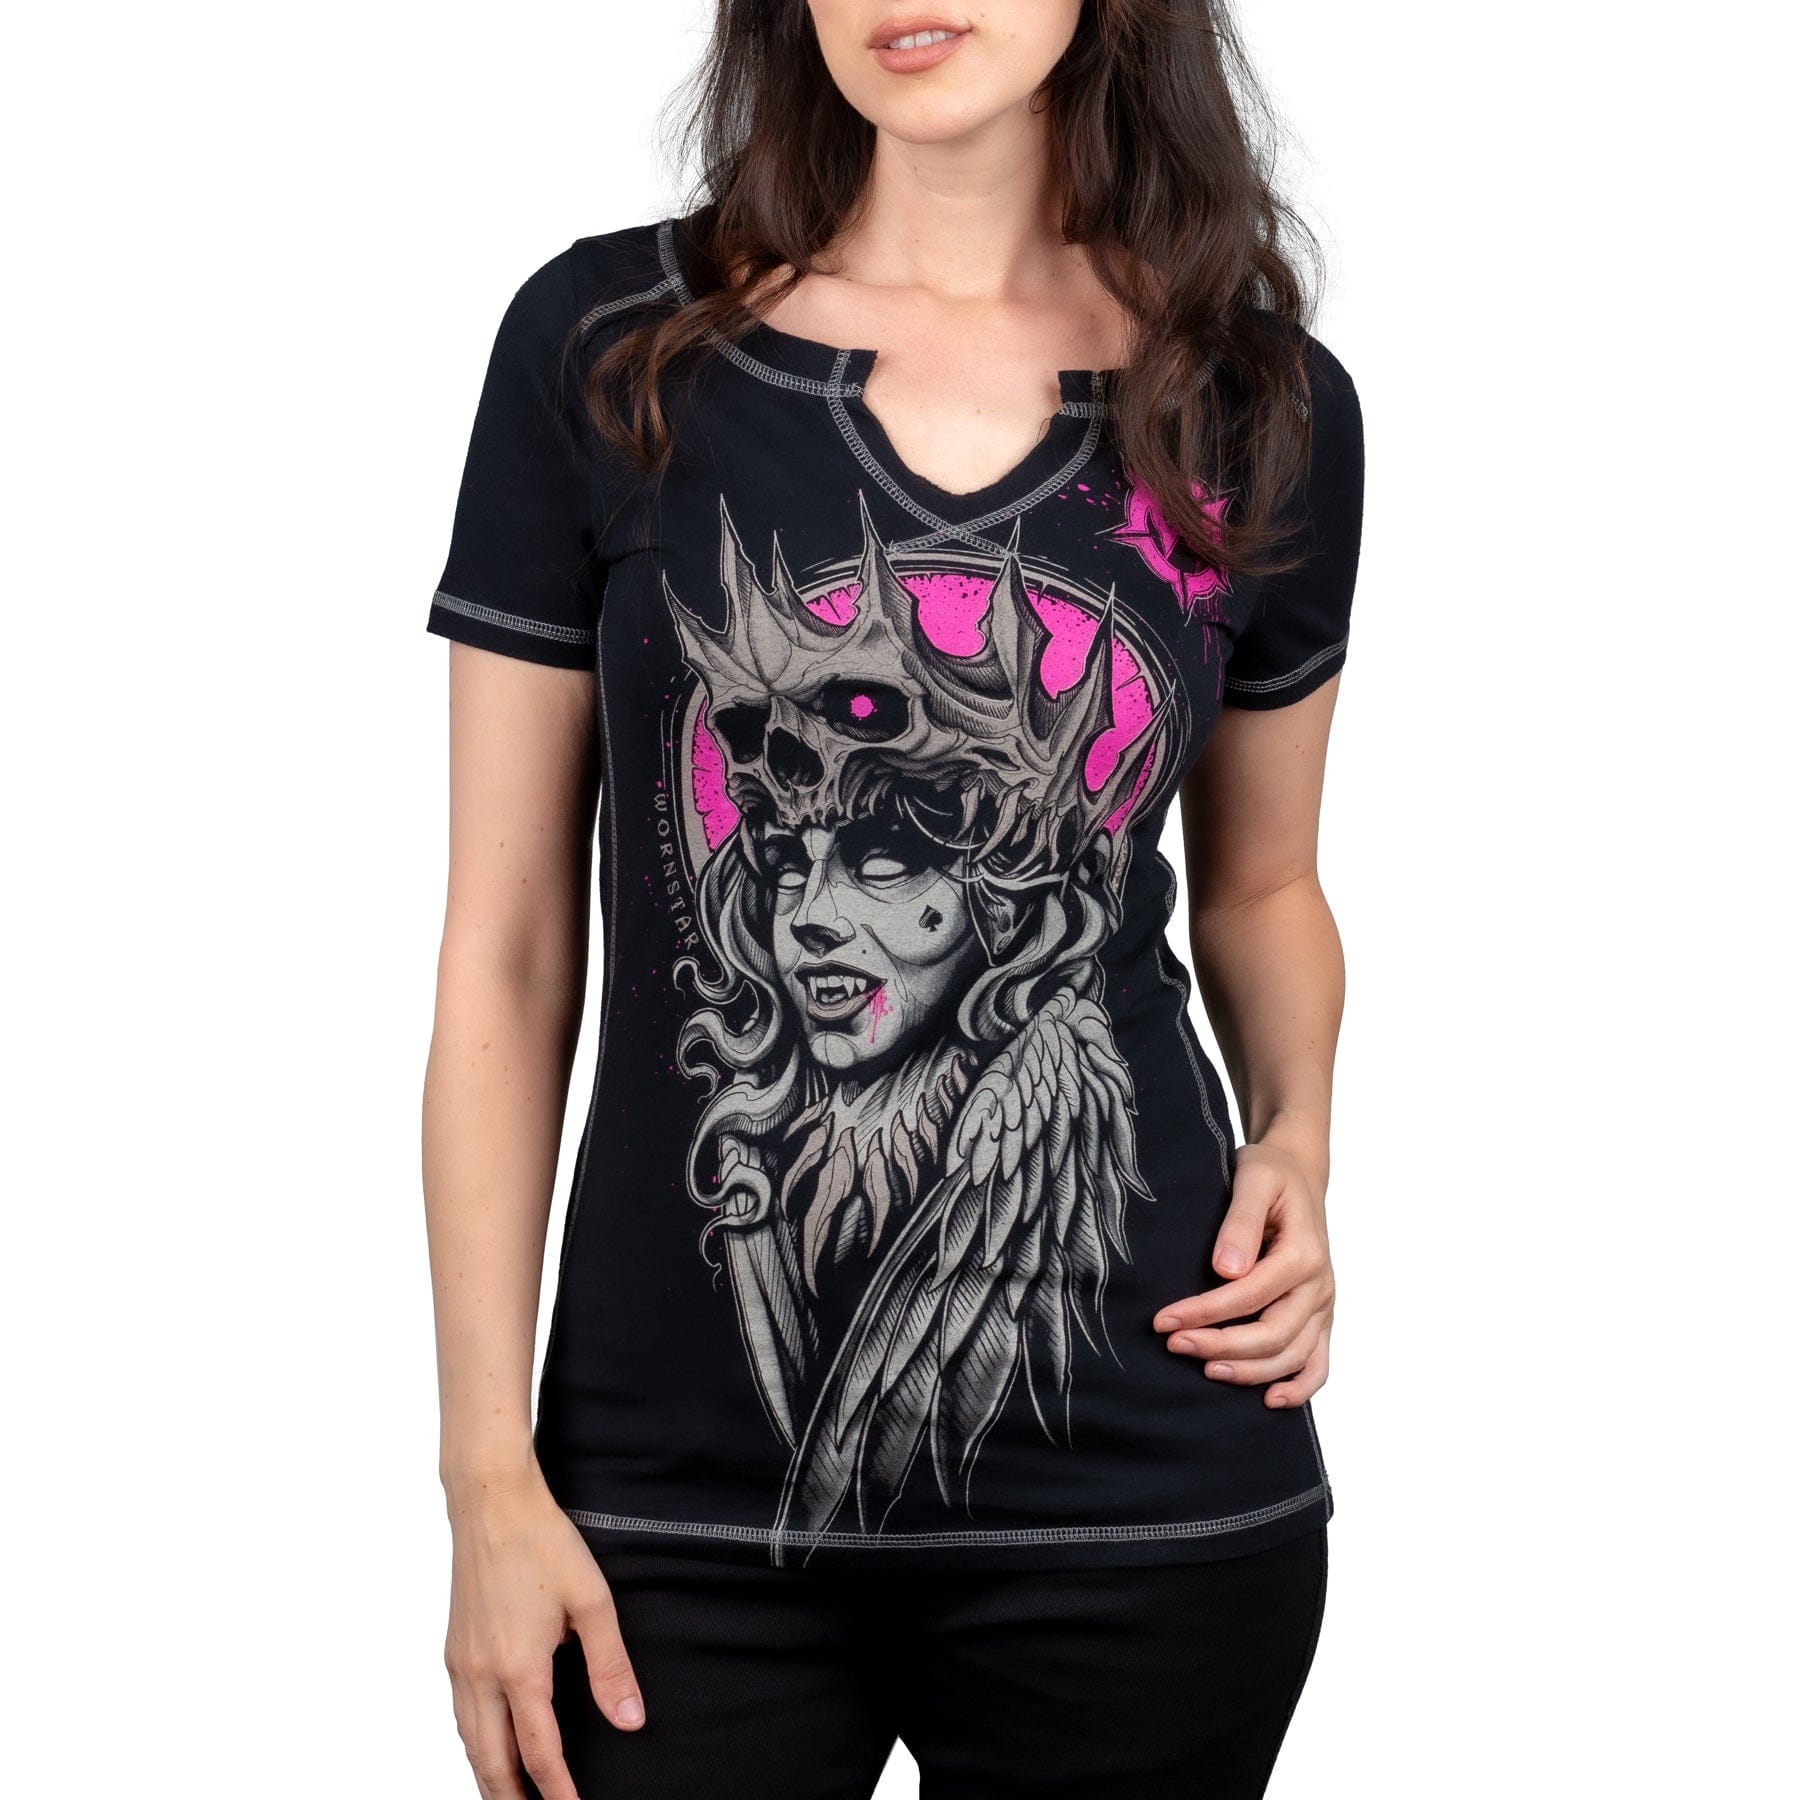 Wornstar Clothing Womens Tee Vampire Queen Skull T-shirt - Black